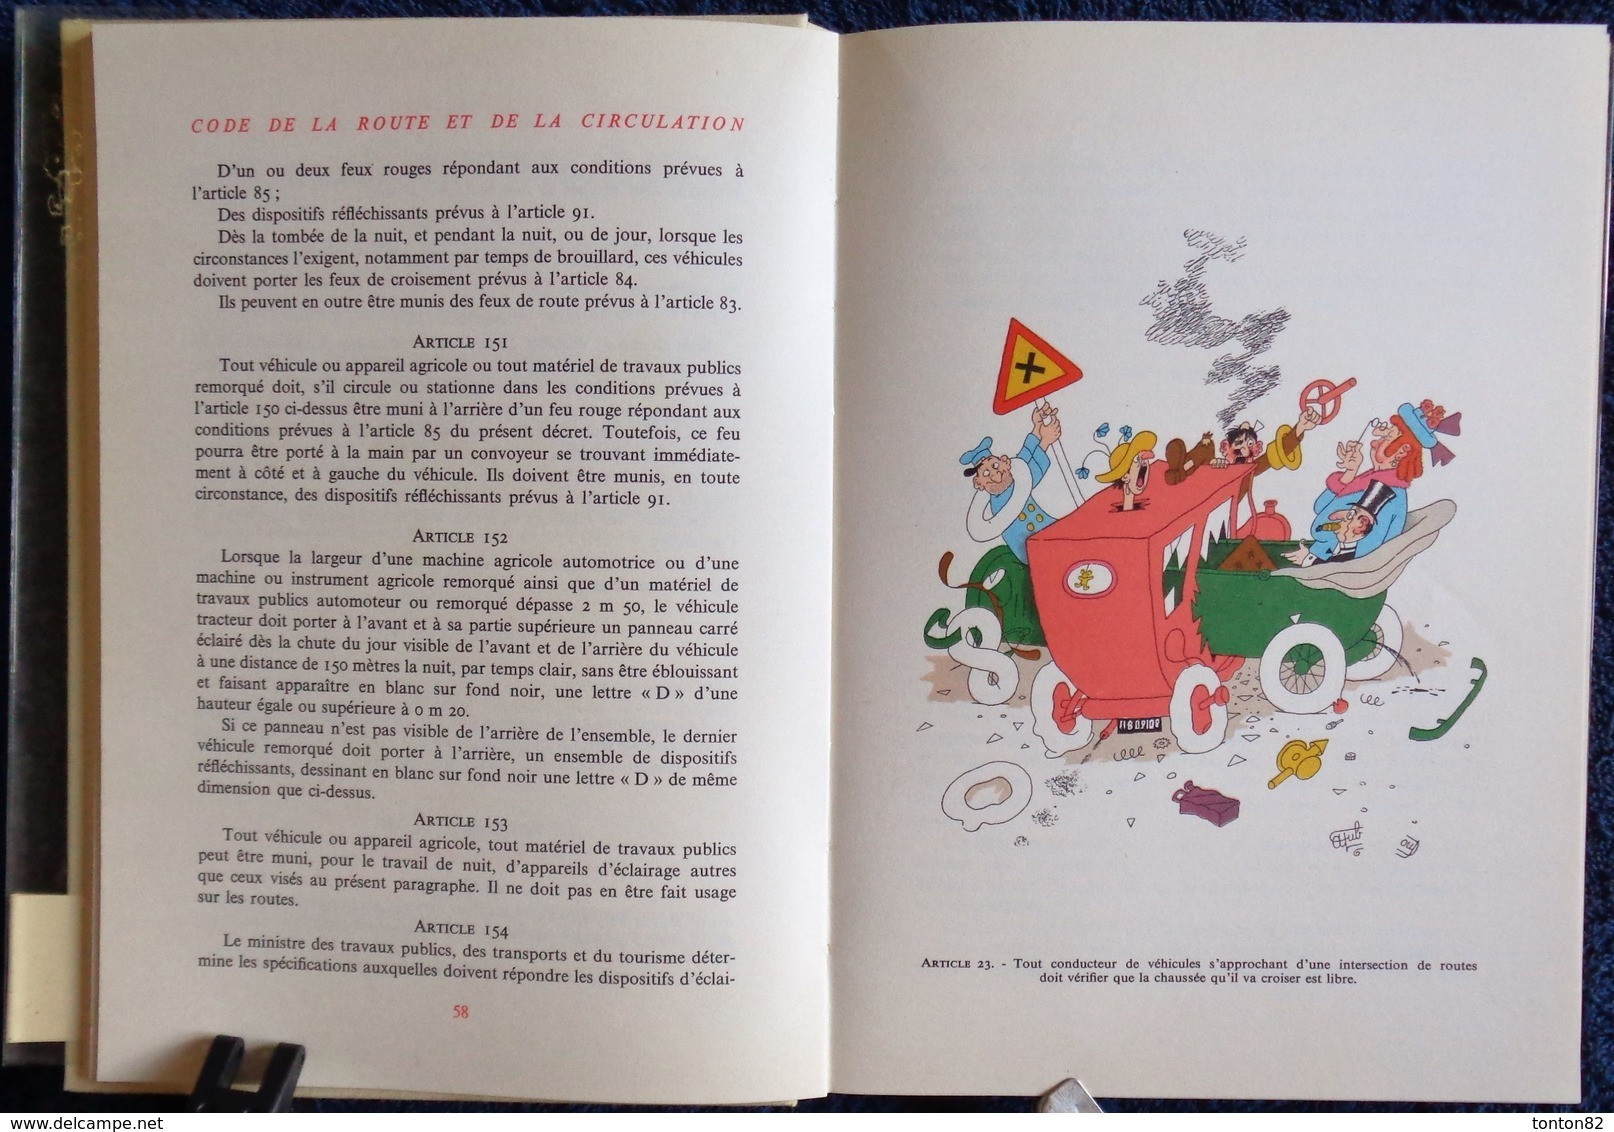 Code de la route - Illustré par DUBOUT - Maurice Gonon, Éditeur - ( 1959 ) - RARE ! - Tirage très limité . TBE .